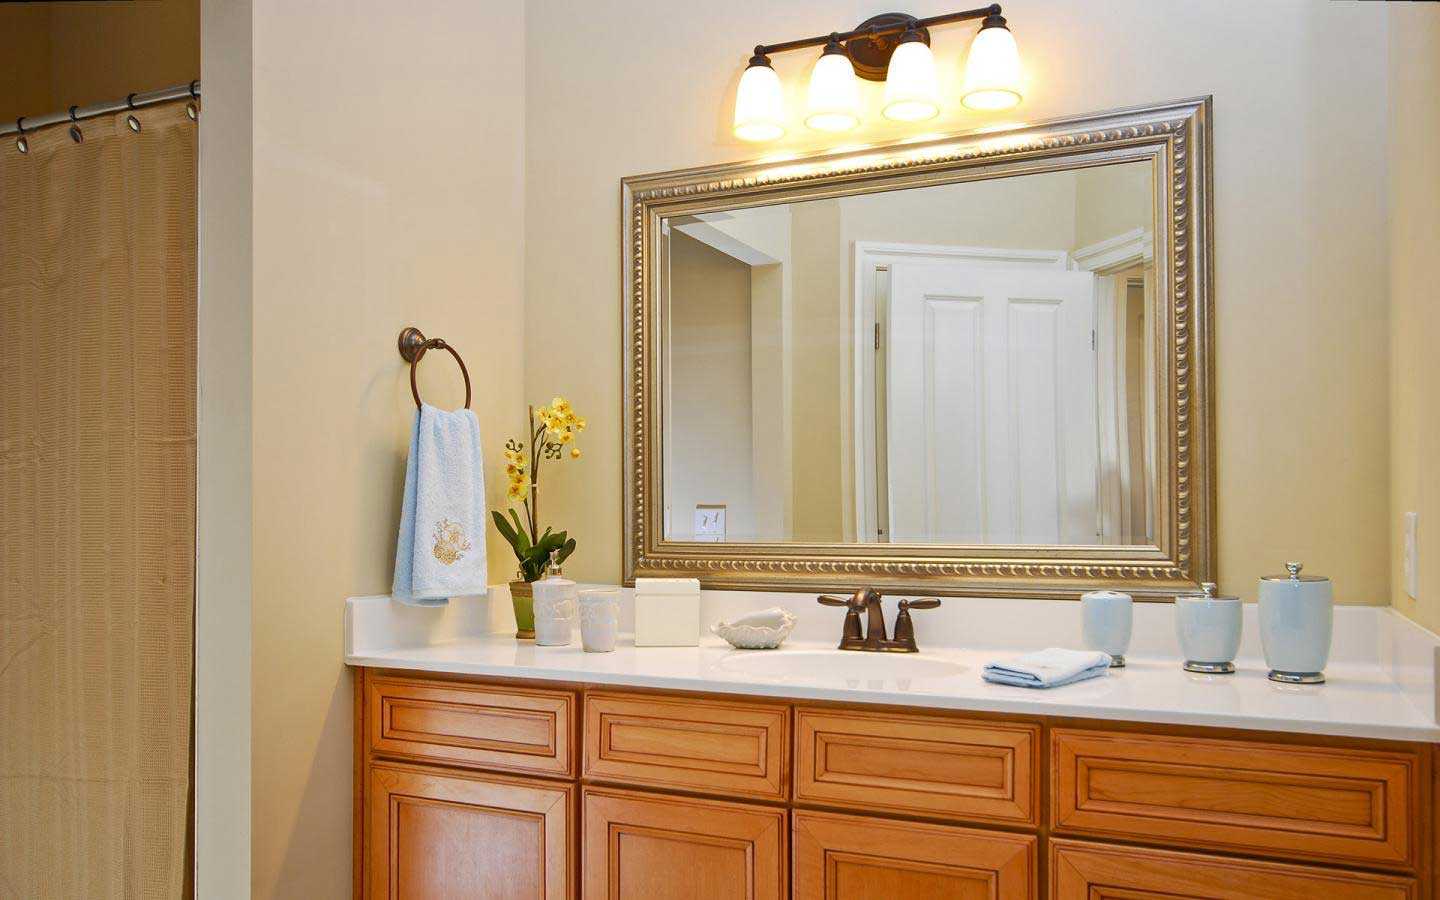 Виды подсветки для зеркала в ванной, варианты установки и подключения 21 - ДиванеТТо